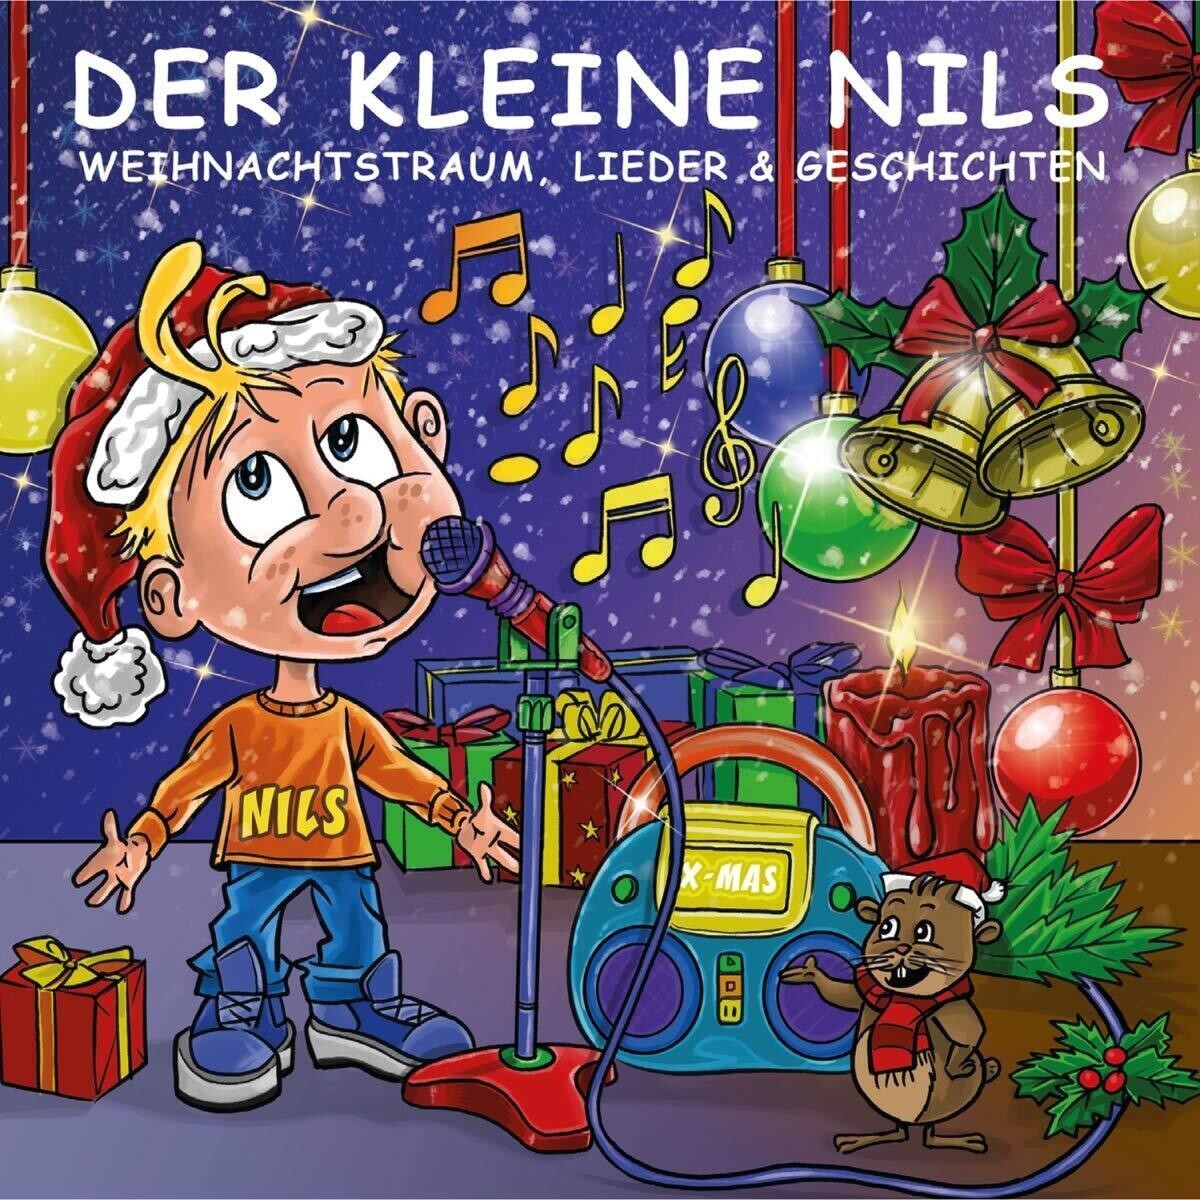 Der kleine Nils - Weihnachtstraum (Lieder & Geschichten)(2018) CD